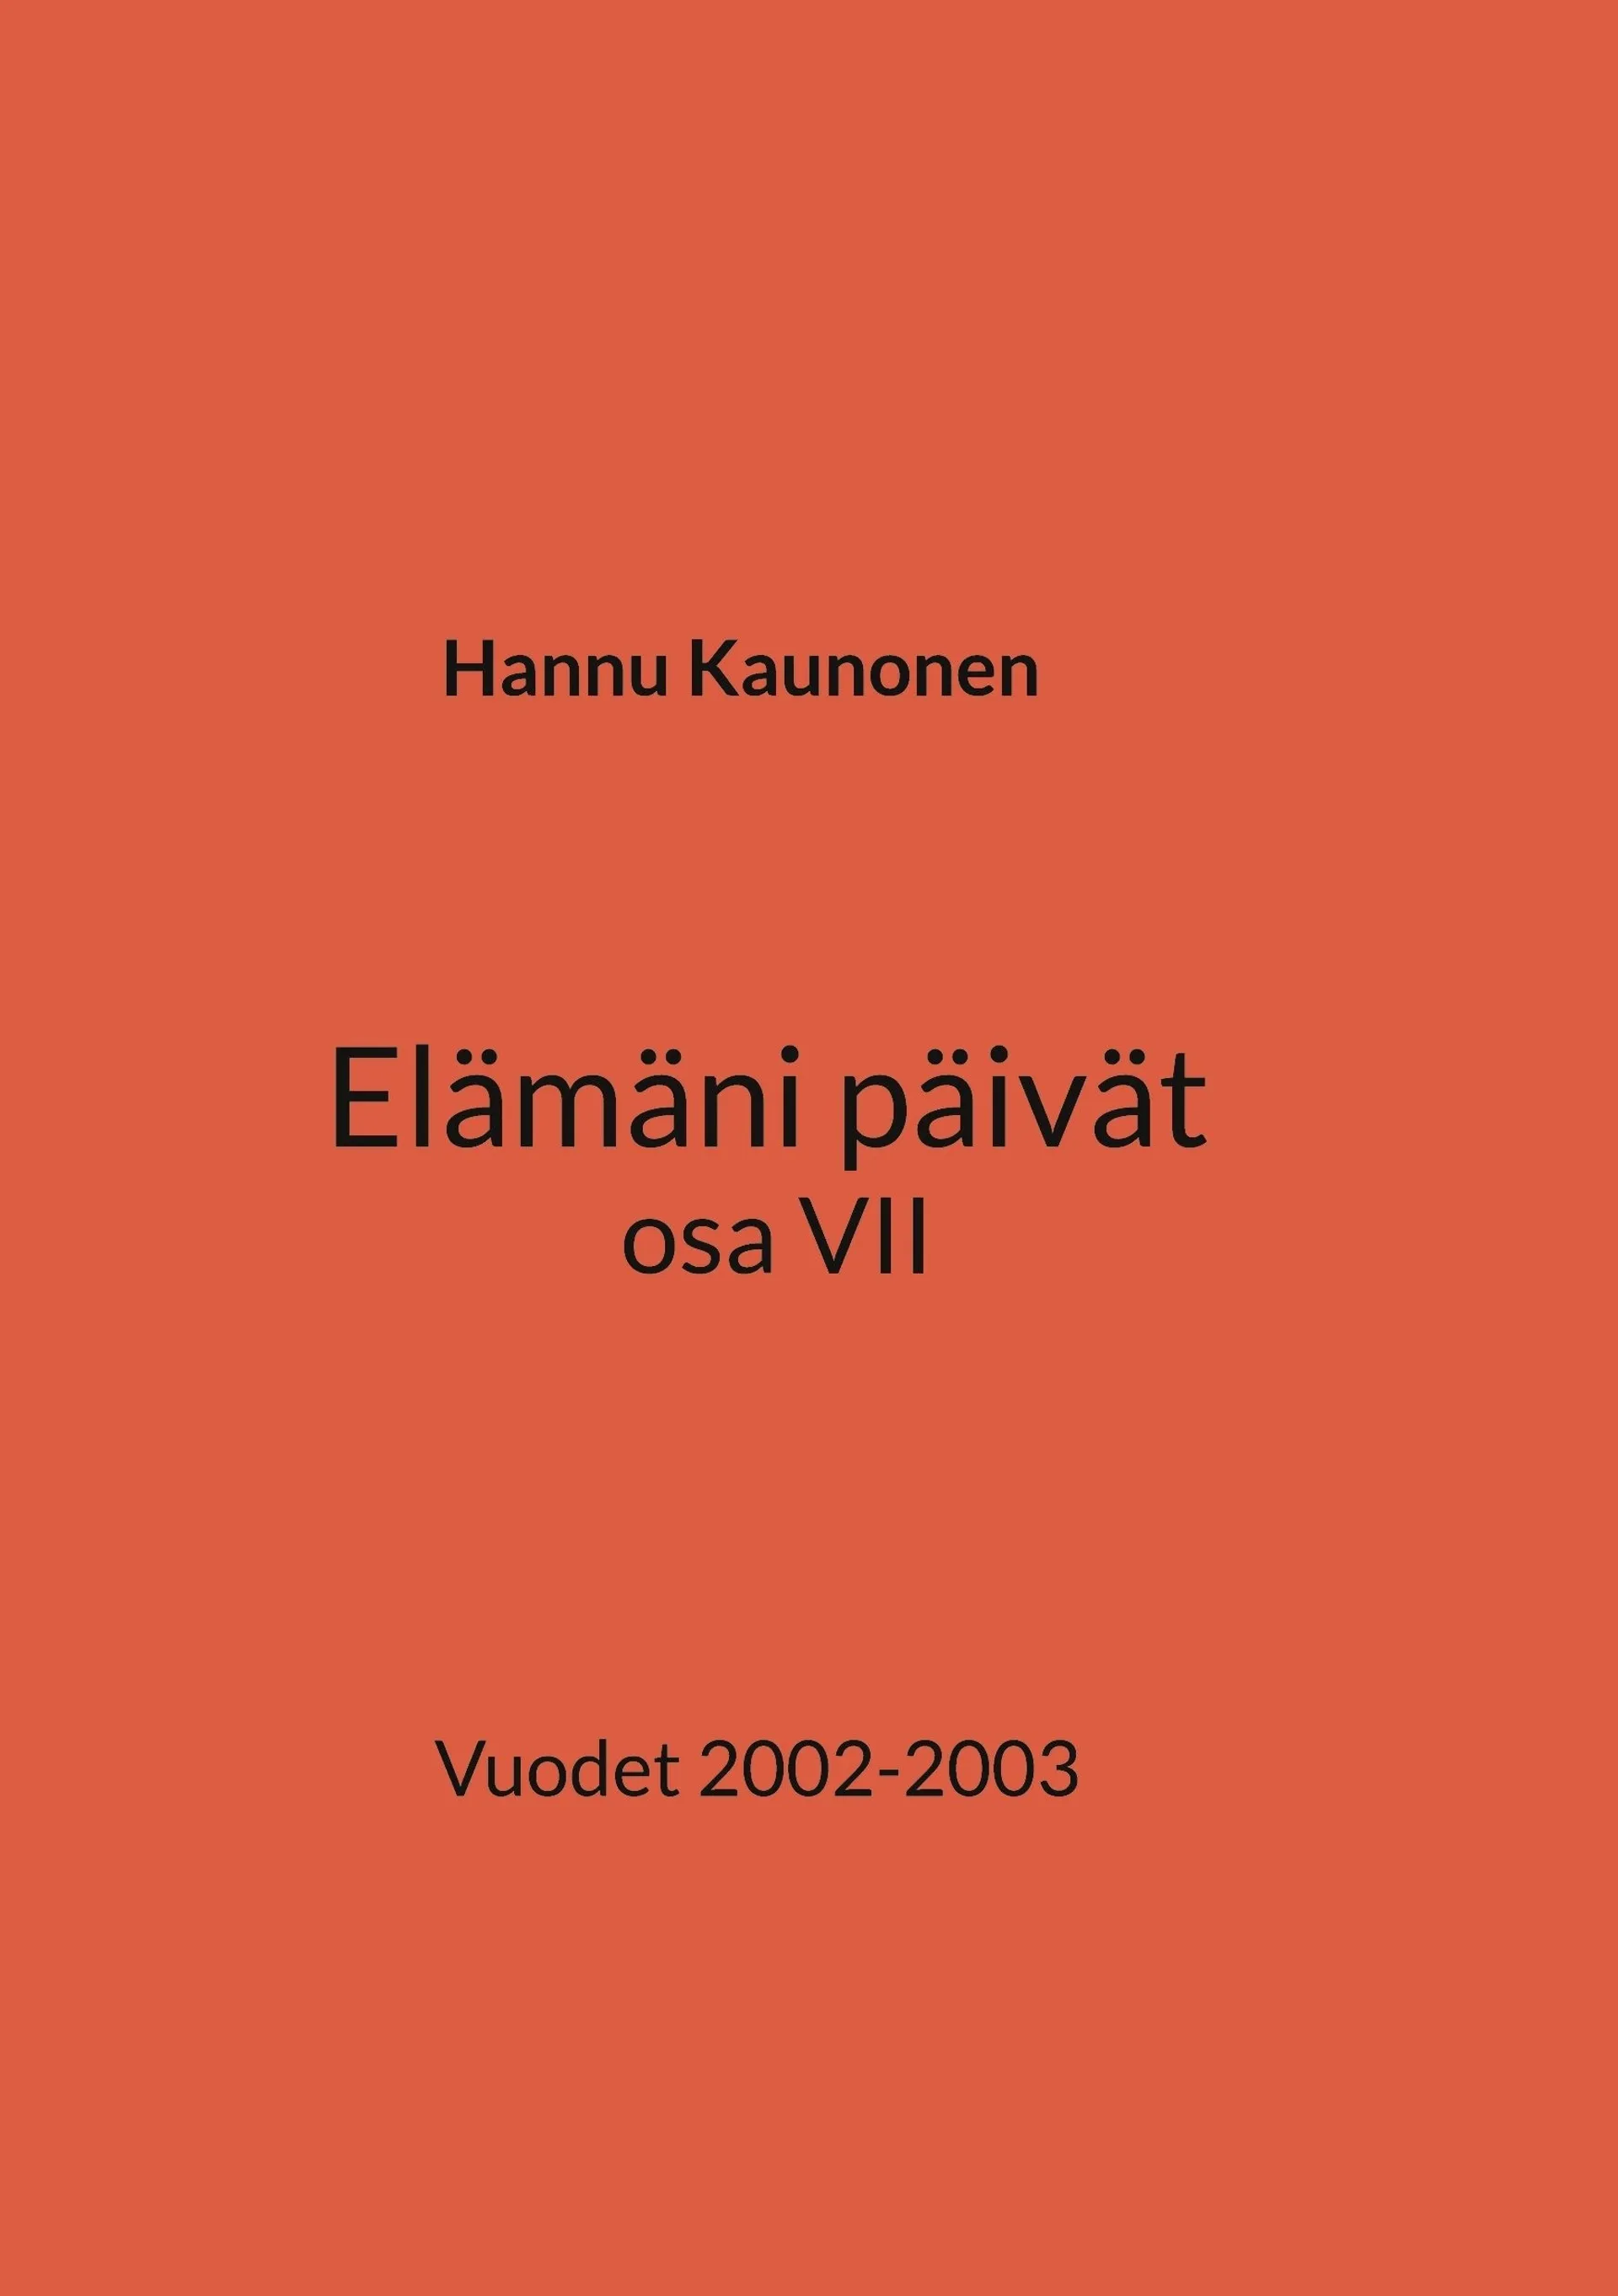 Kaunonen, Elämäni päivät osa VII - Vuodet 2002-2003